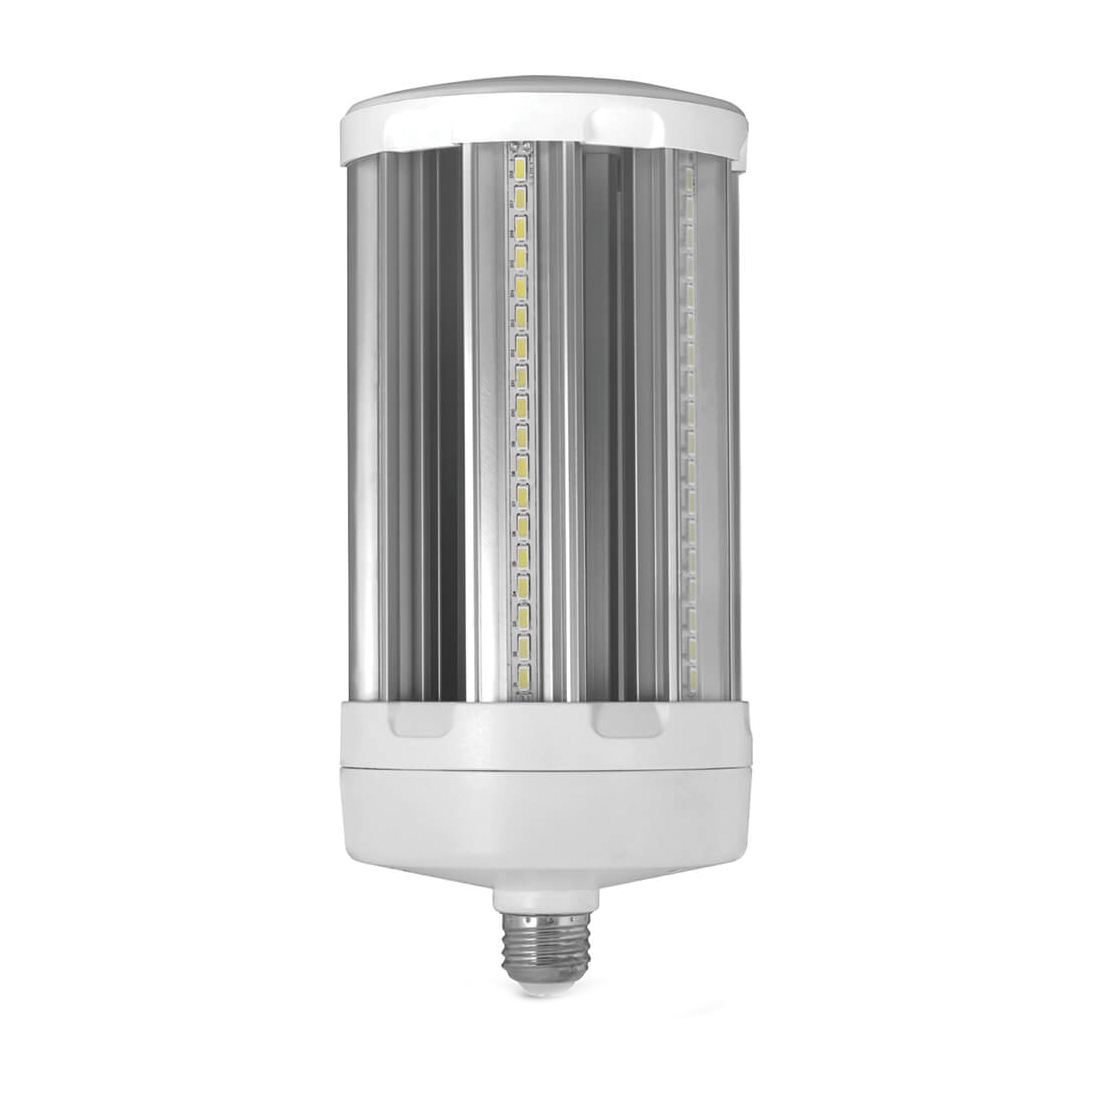 C10000/5K/LEDG2 LED Bulb, Corn Cob, 500 W Equivalent, E26 Lamp Base, Clear, Daylight Light